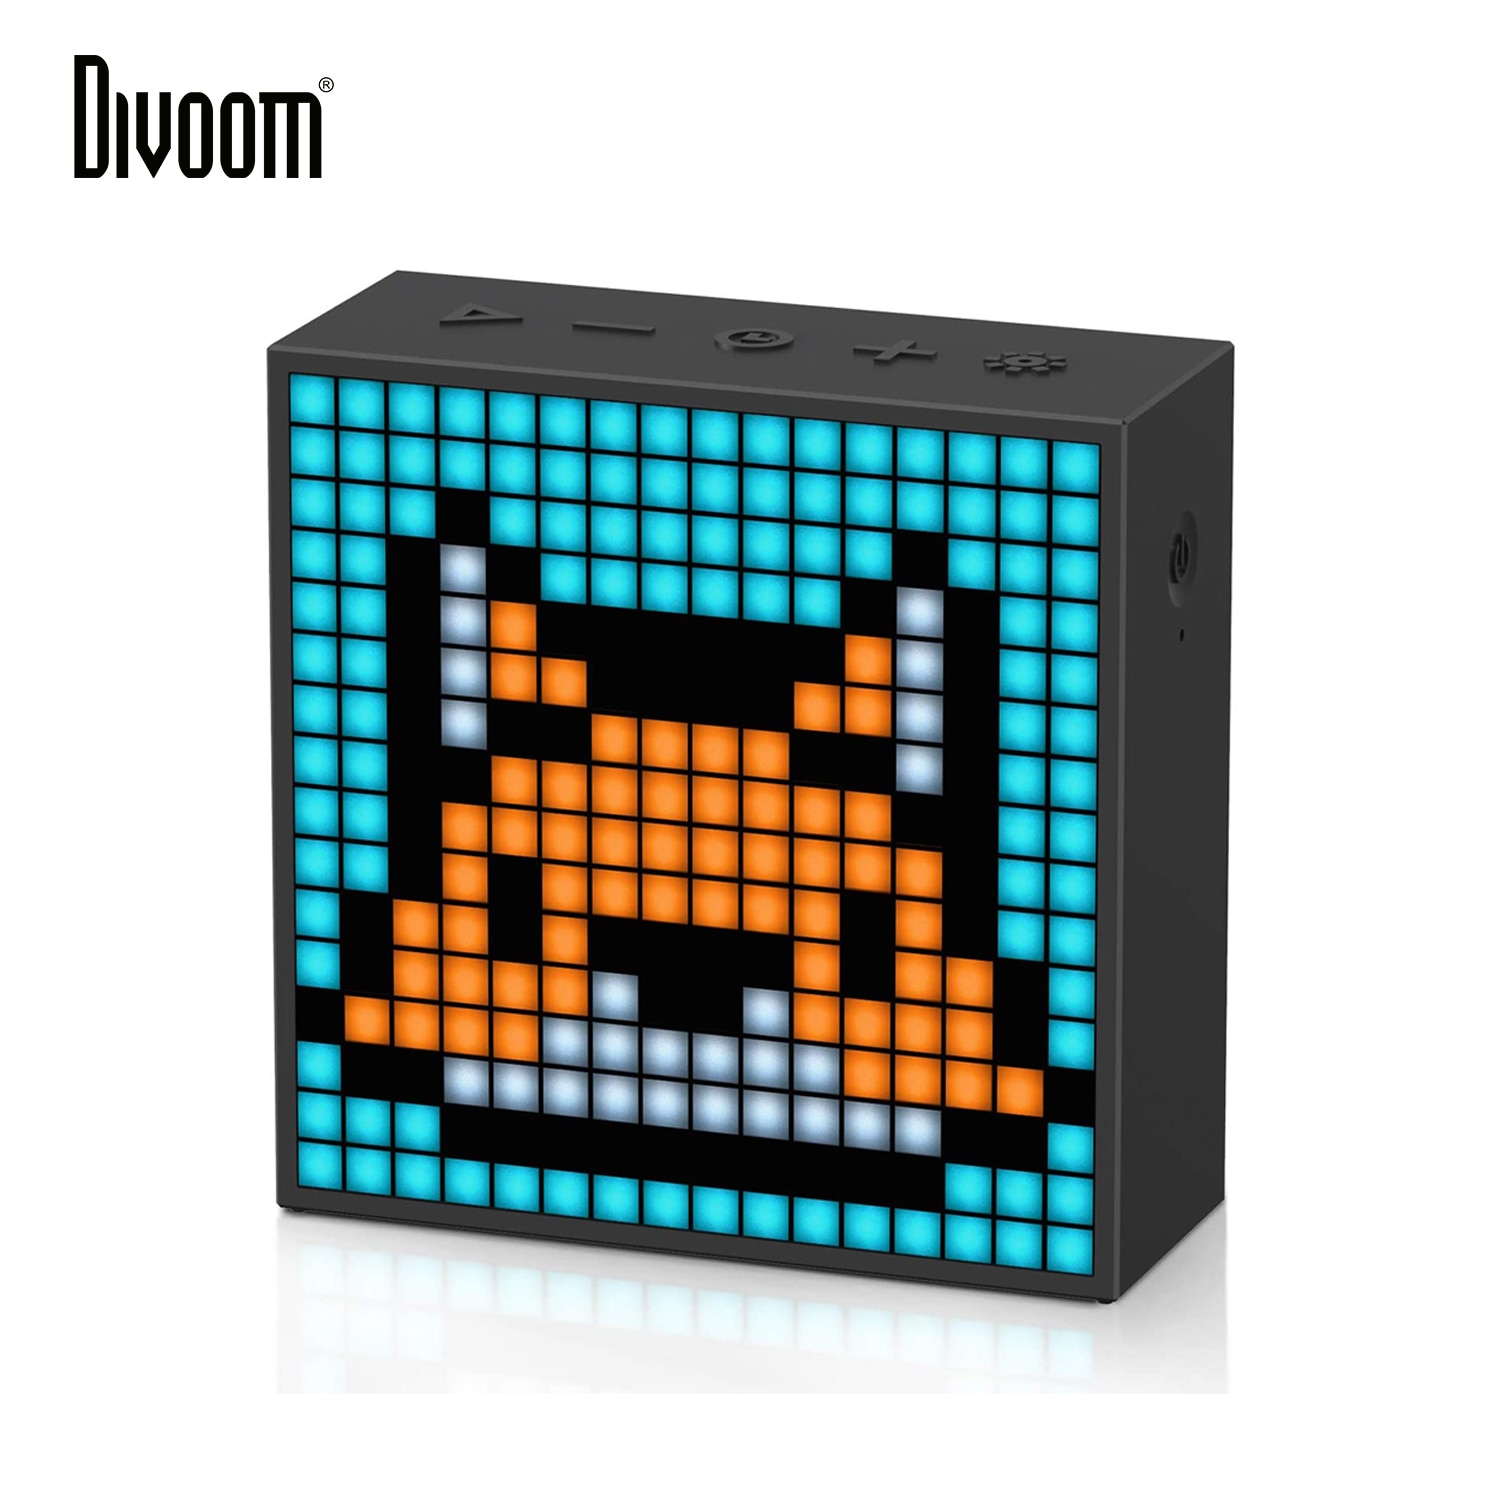 Divoom-Timebox-Evo-Haut-parleur-portable-Bluetooth-avec-horloge-et-affichage-LED-programmable-pour-cr-ation